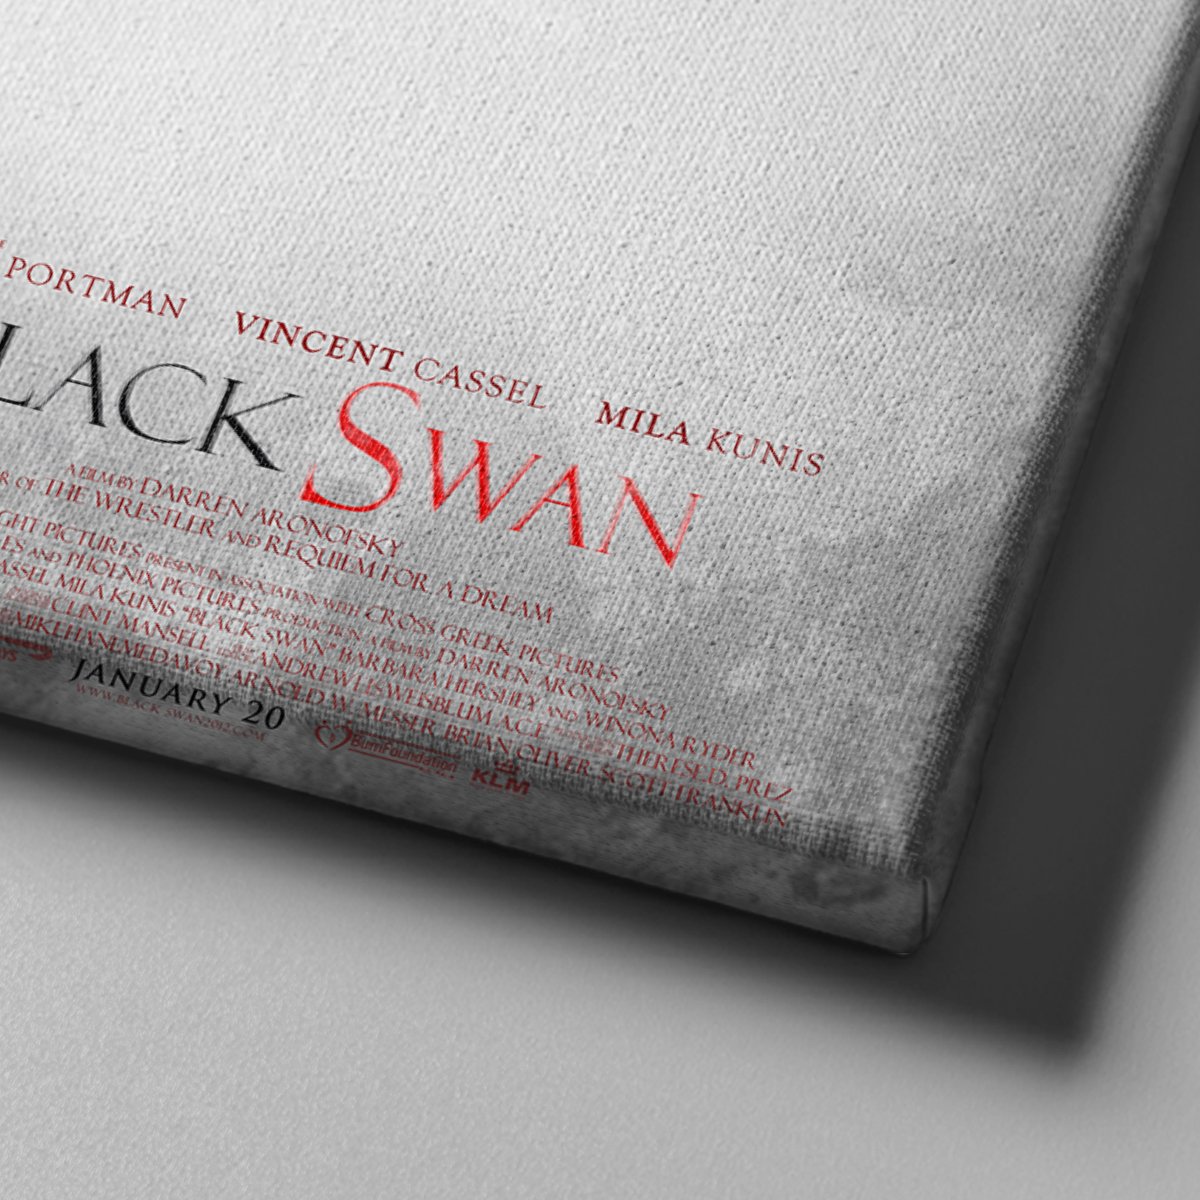 Market701 | Black Swan Film Afişi Kanvas Tablo - 